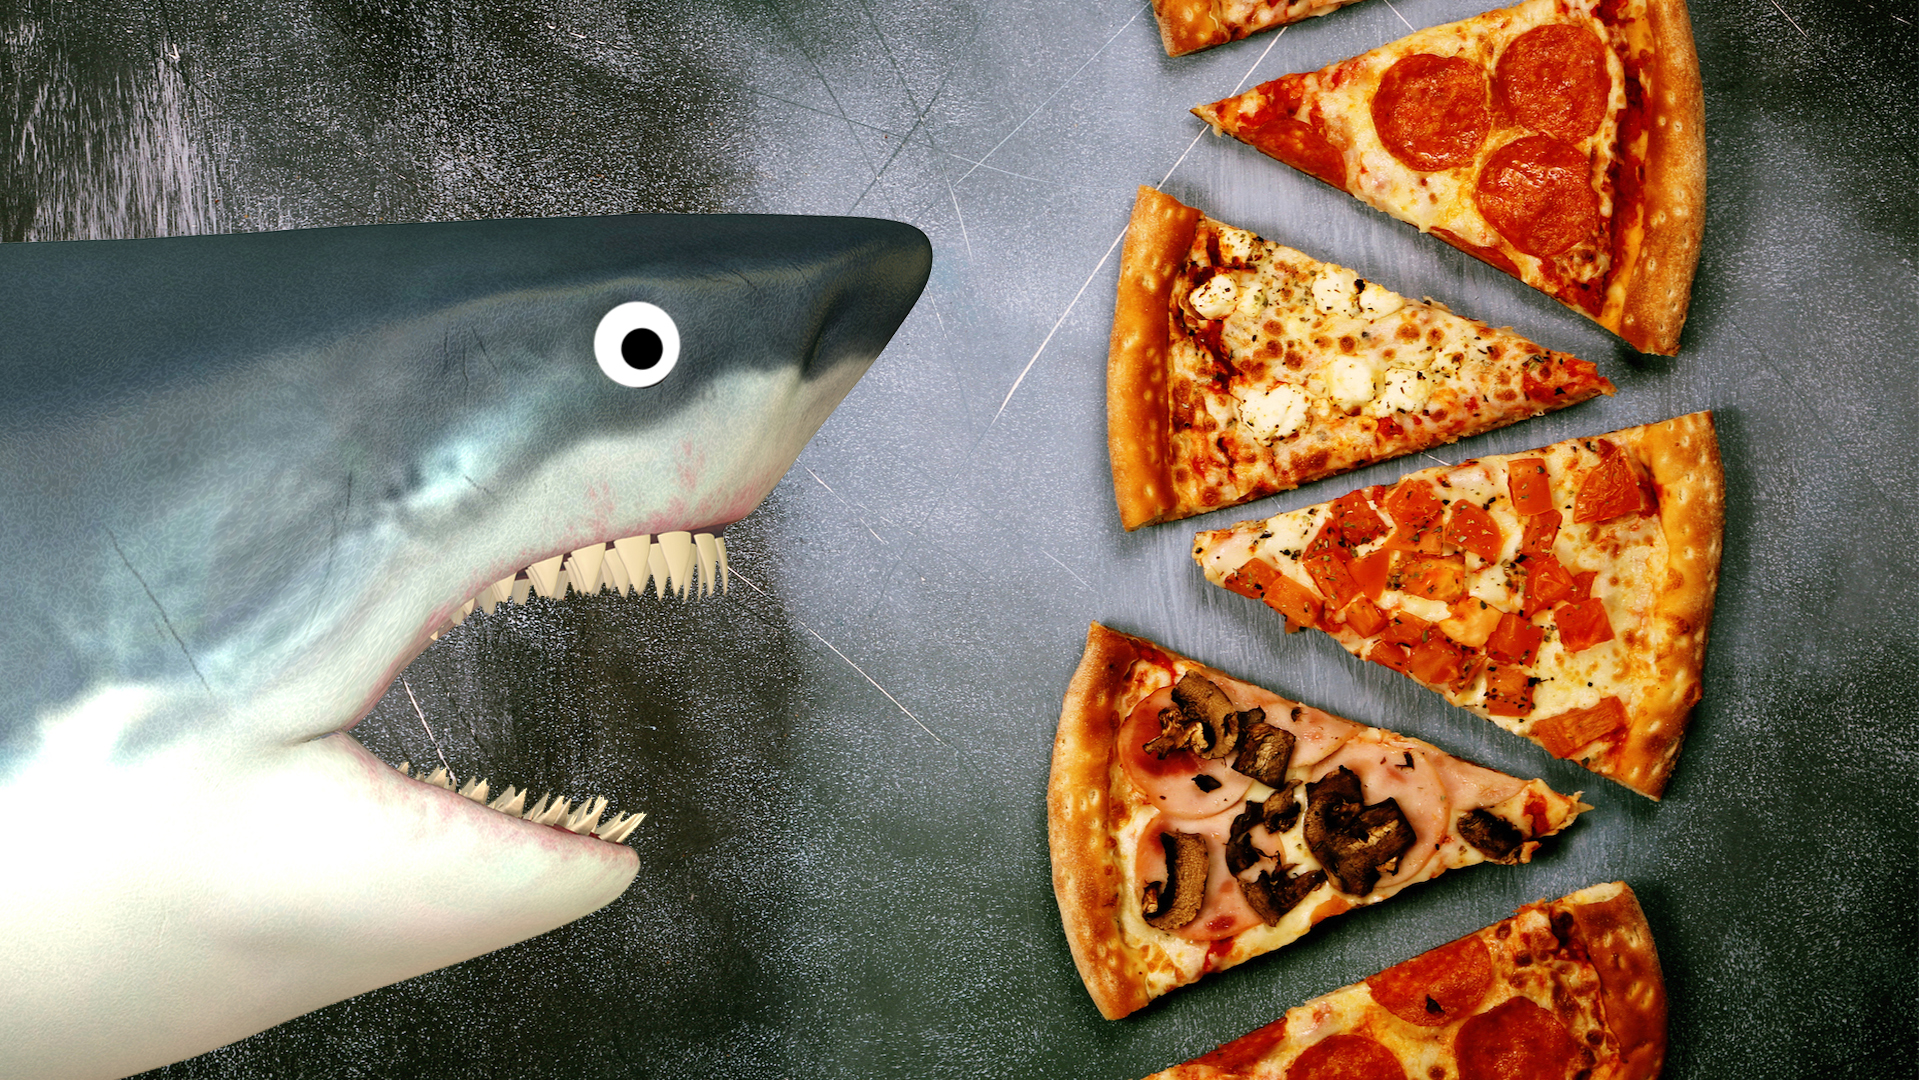 A shark approaches a pizza buffet